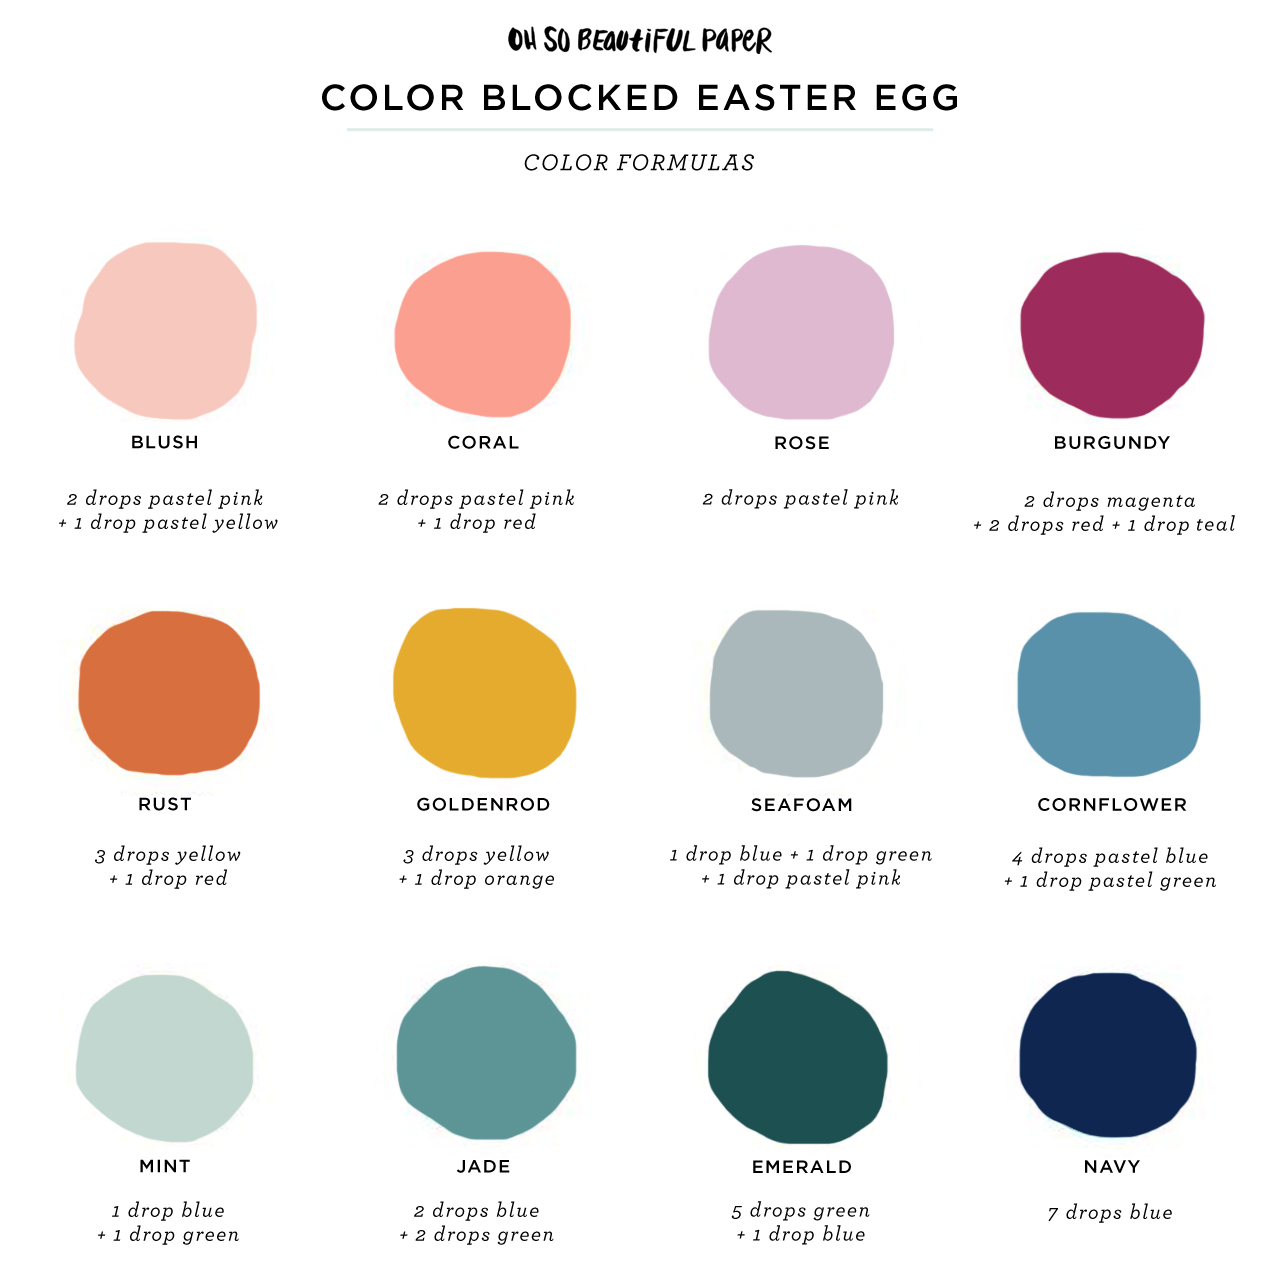 Вот цветовая палитра, которую я использовал в качестве отправной точки, вместе с пищевыми красителями, которые я использовал для окрашивания яиц: